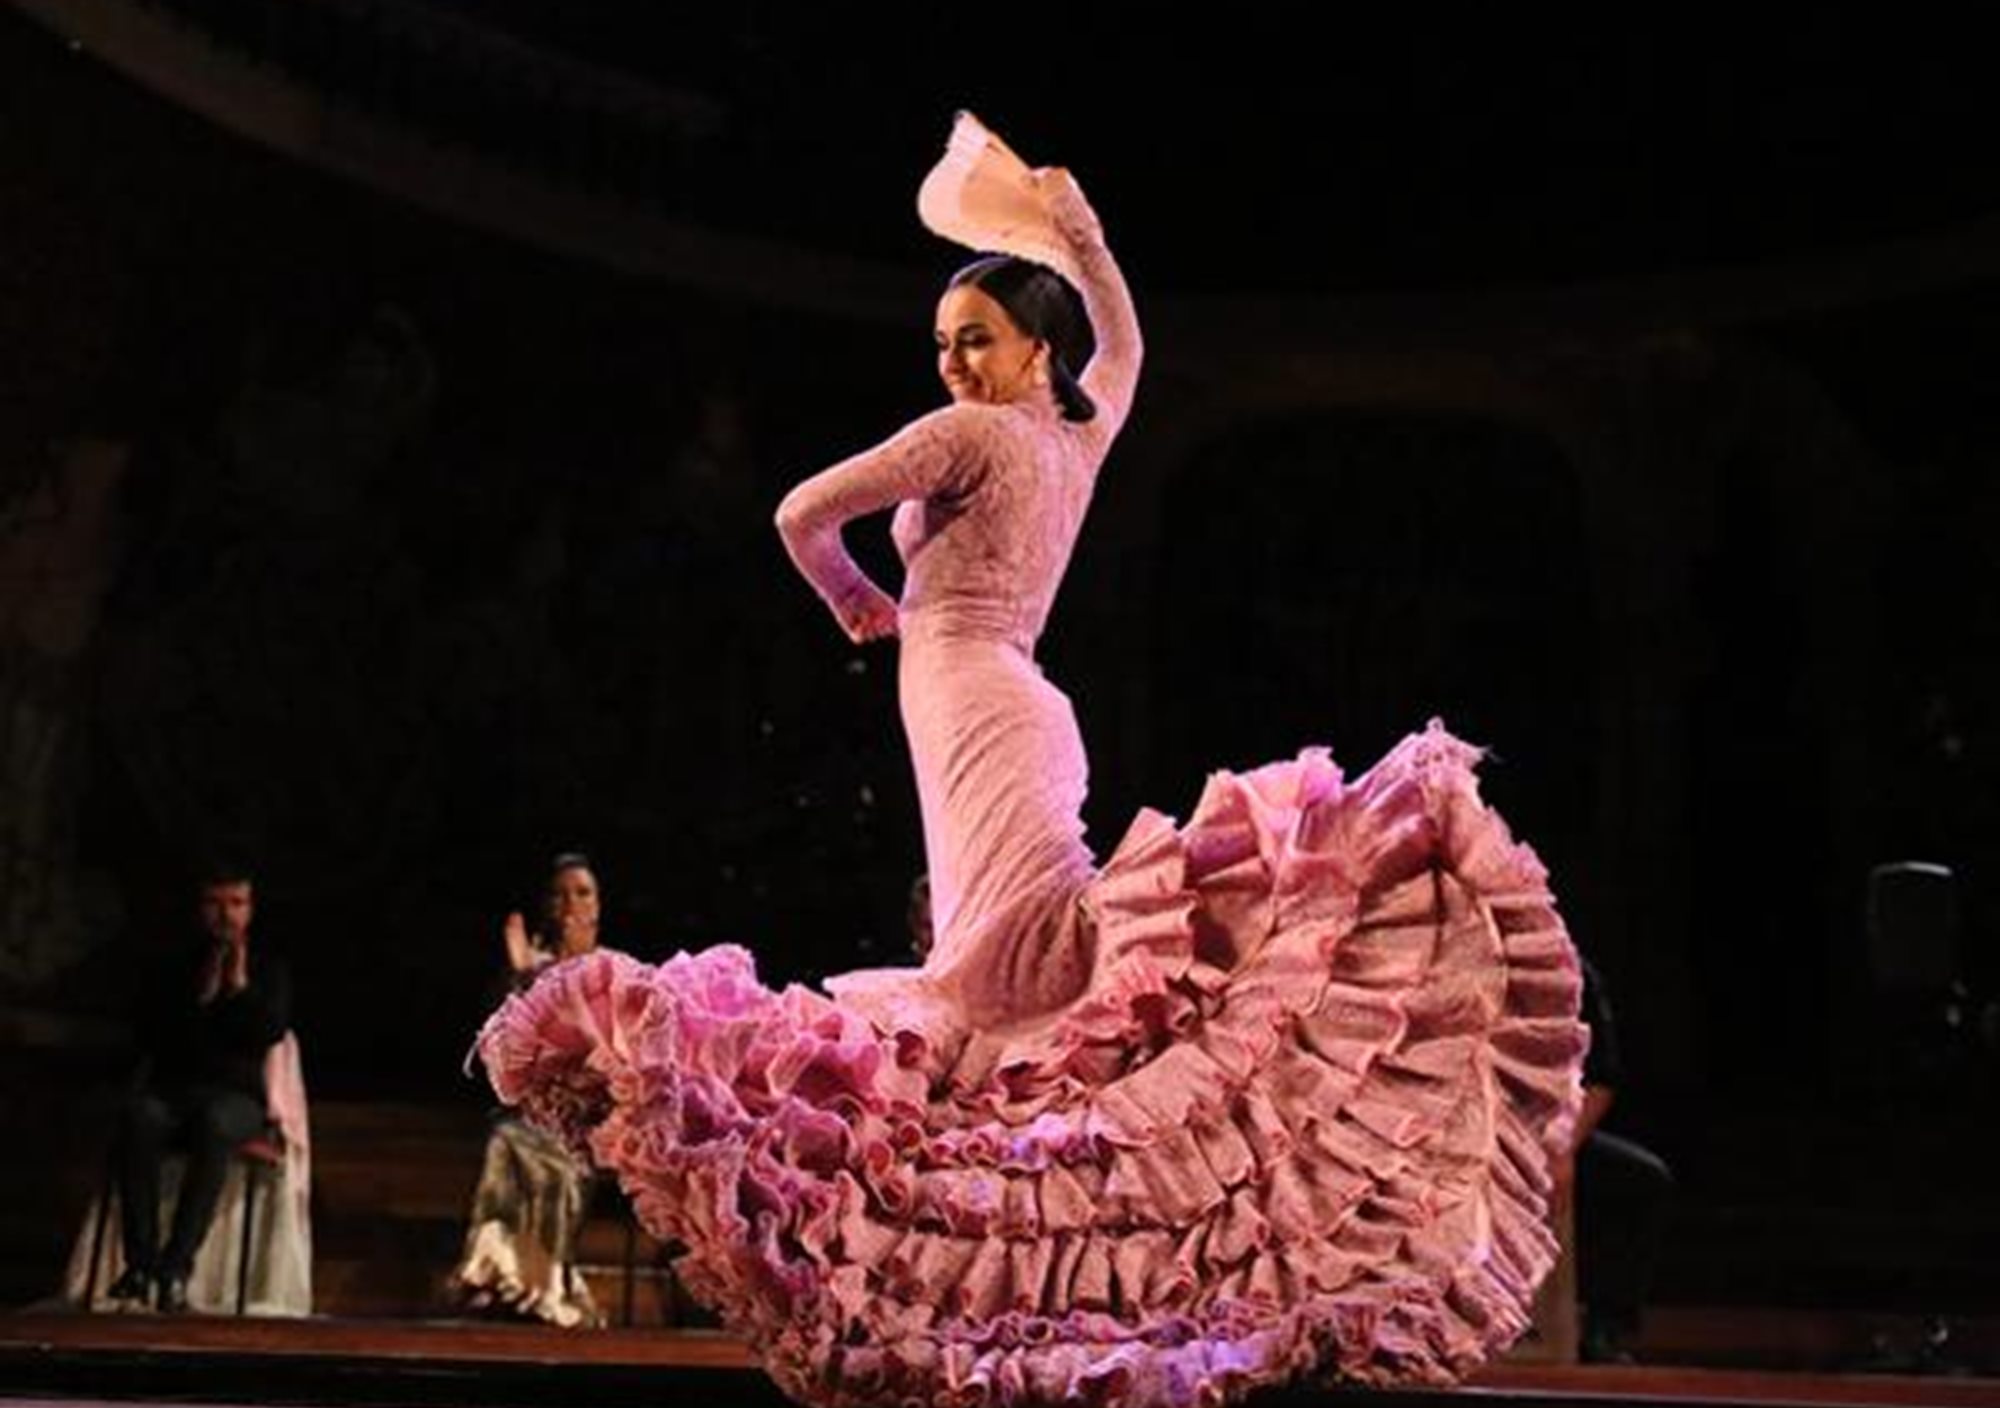 Show Gran Gala Flamenco in Palau de la Música Catalana buy get online tickets